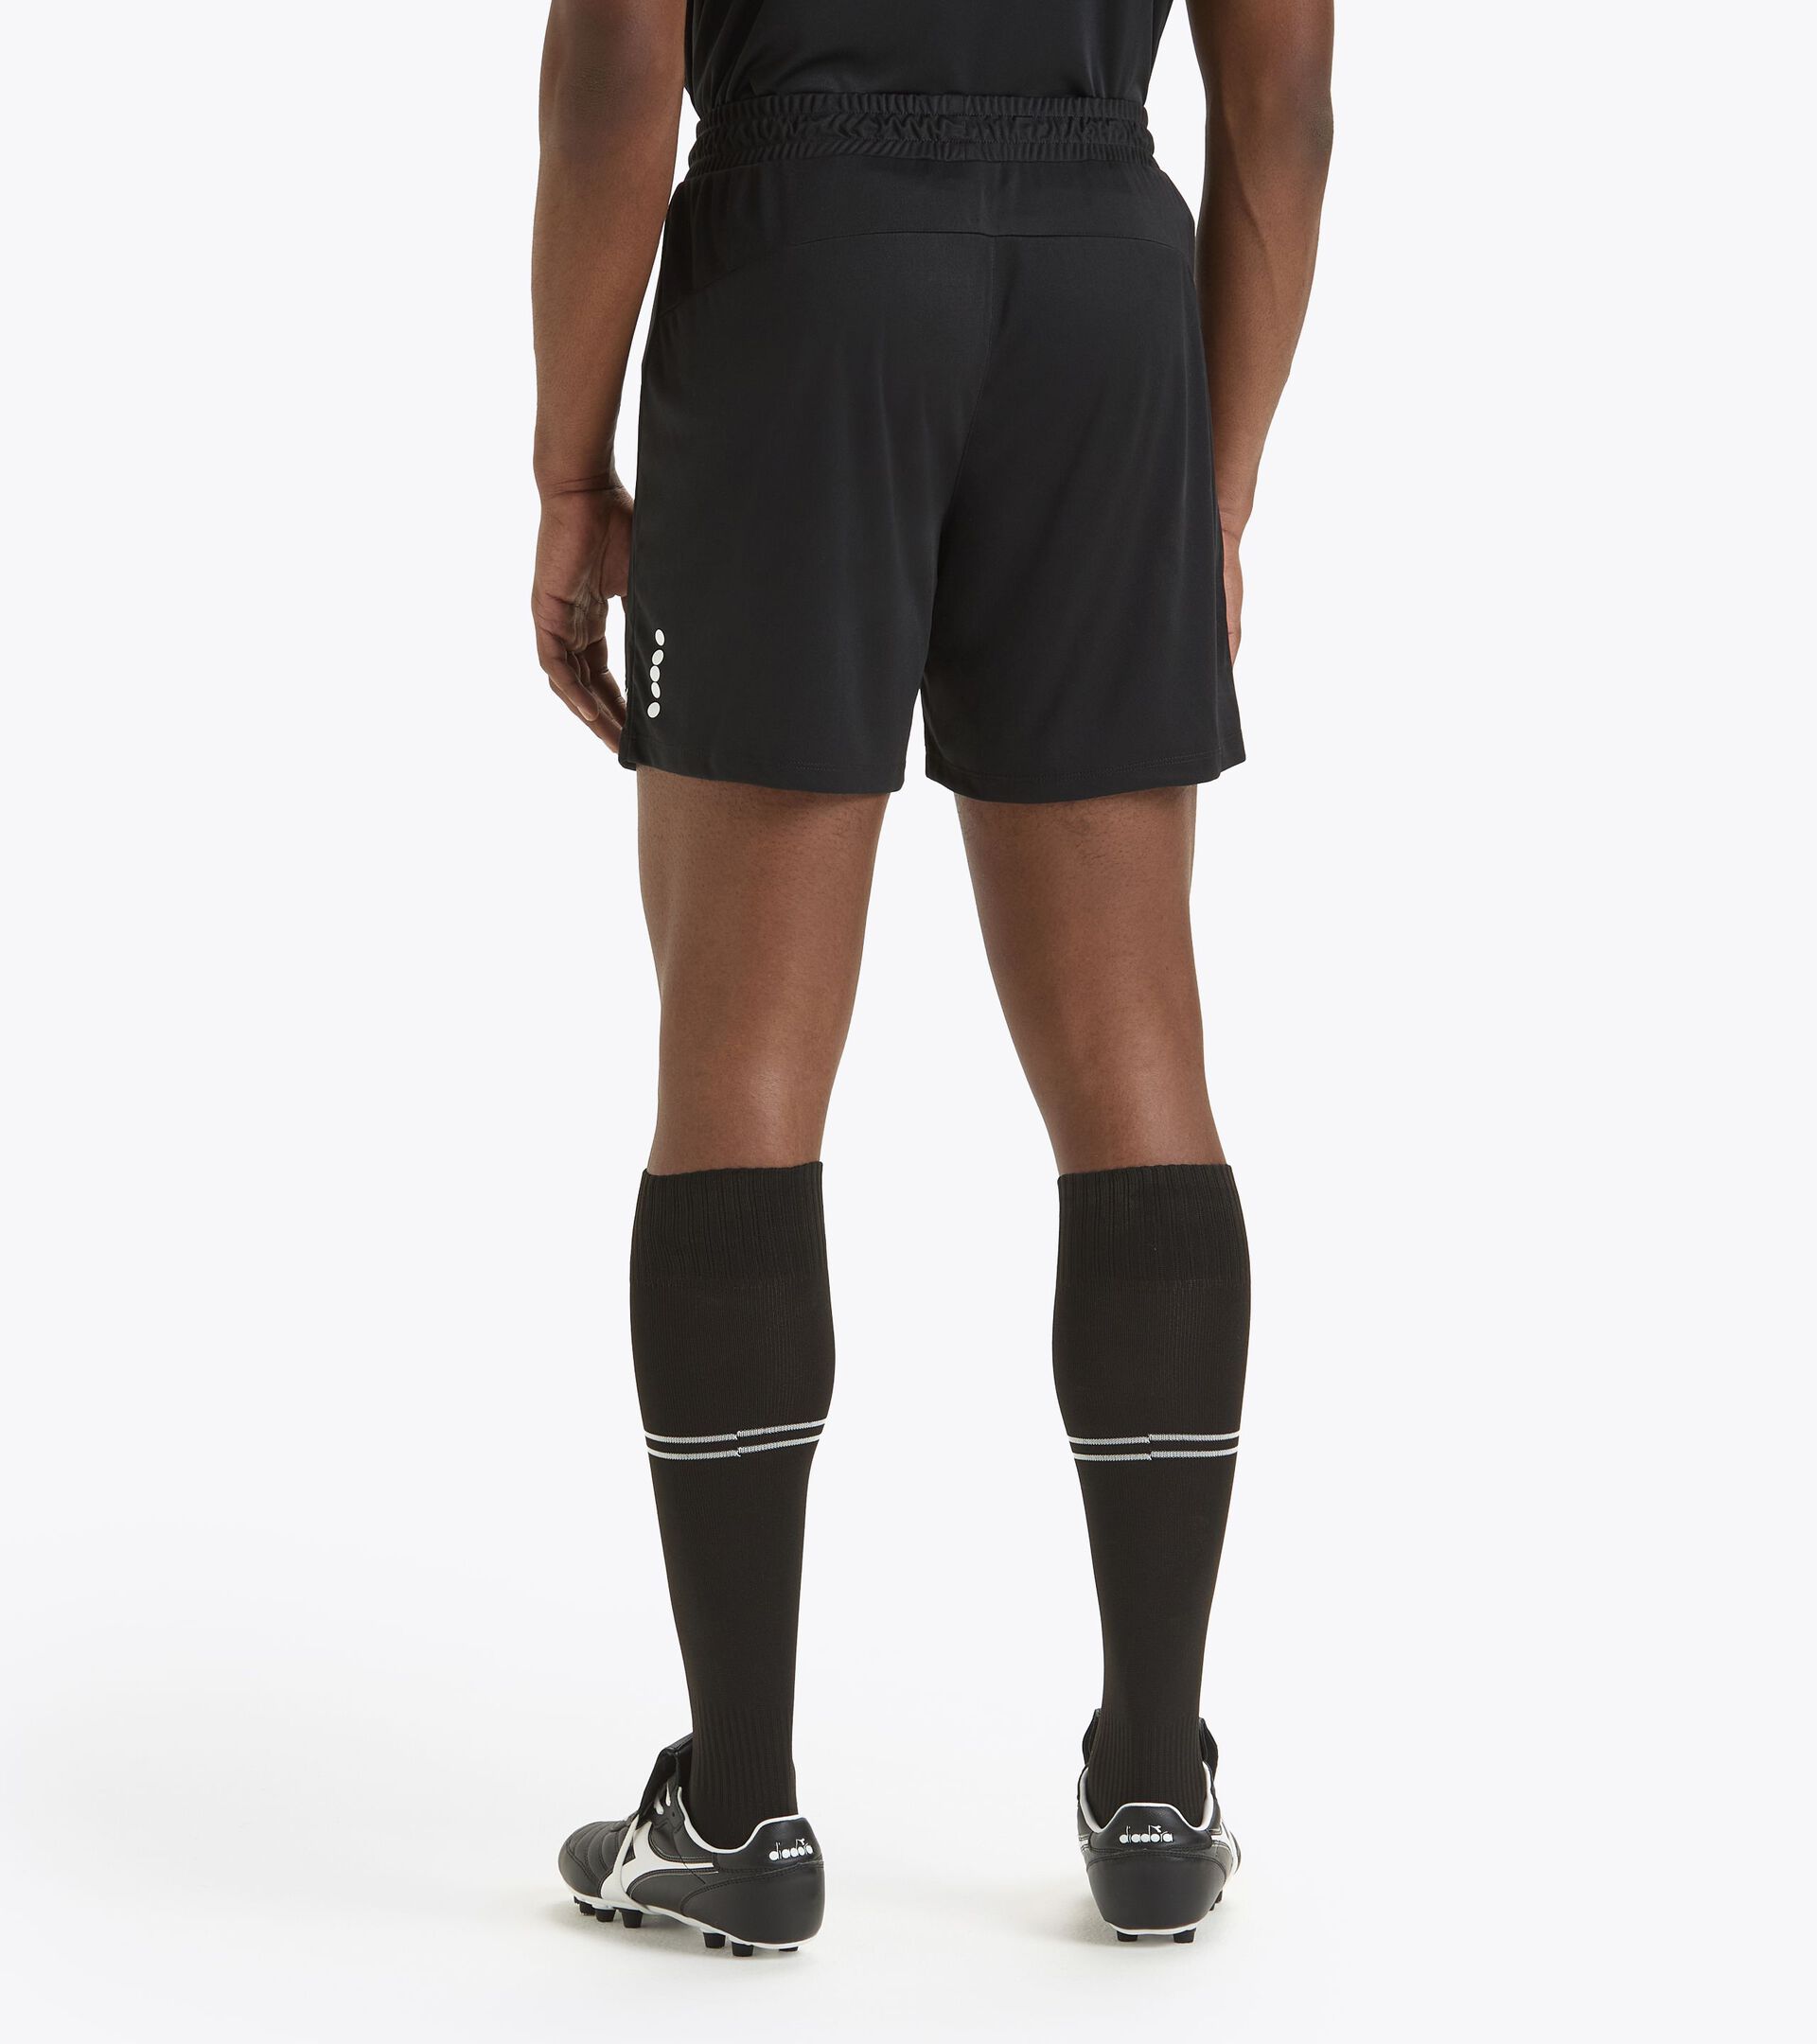 Calcio bermuda shorts - Men’s MATCH SHORT SCUDETTO BLACK - Diadora